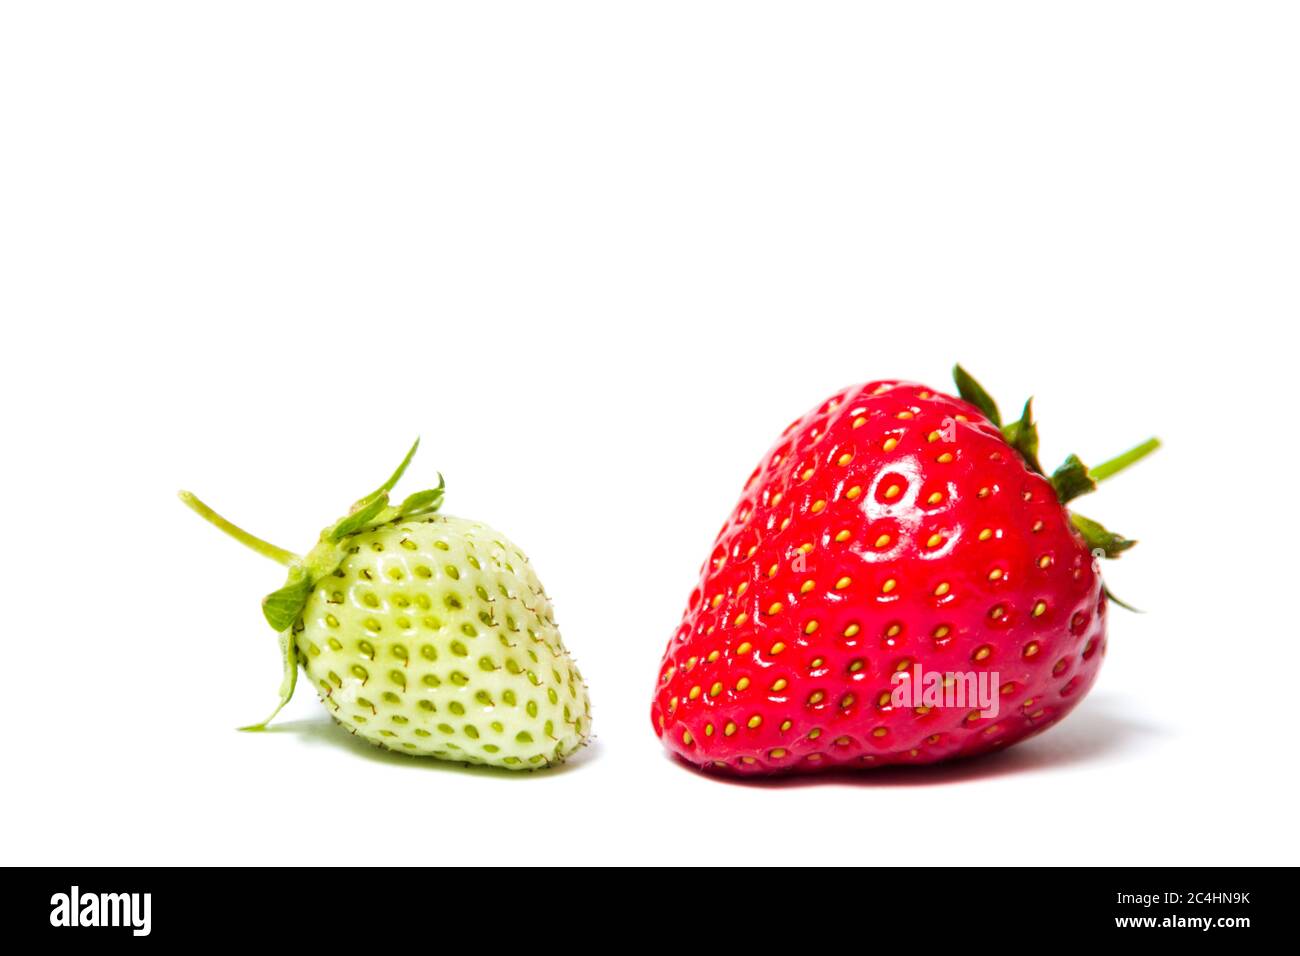 Comparez, rouge et vert, mûres et non mûres fraises sur son côté sur fond blanc - isoler Banque D'Images